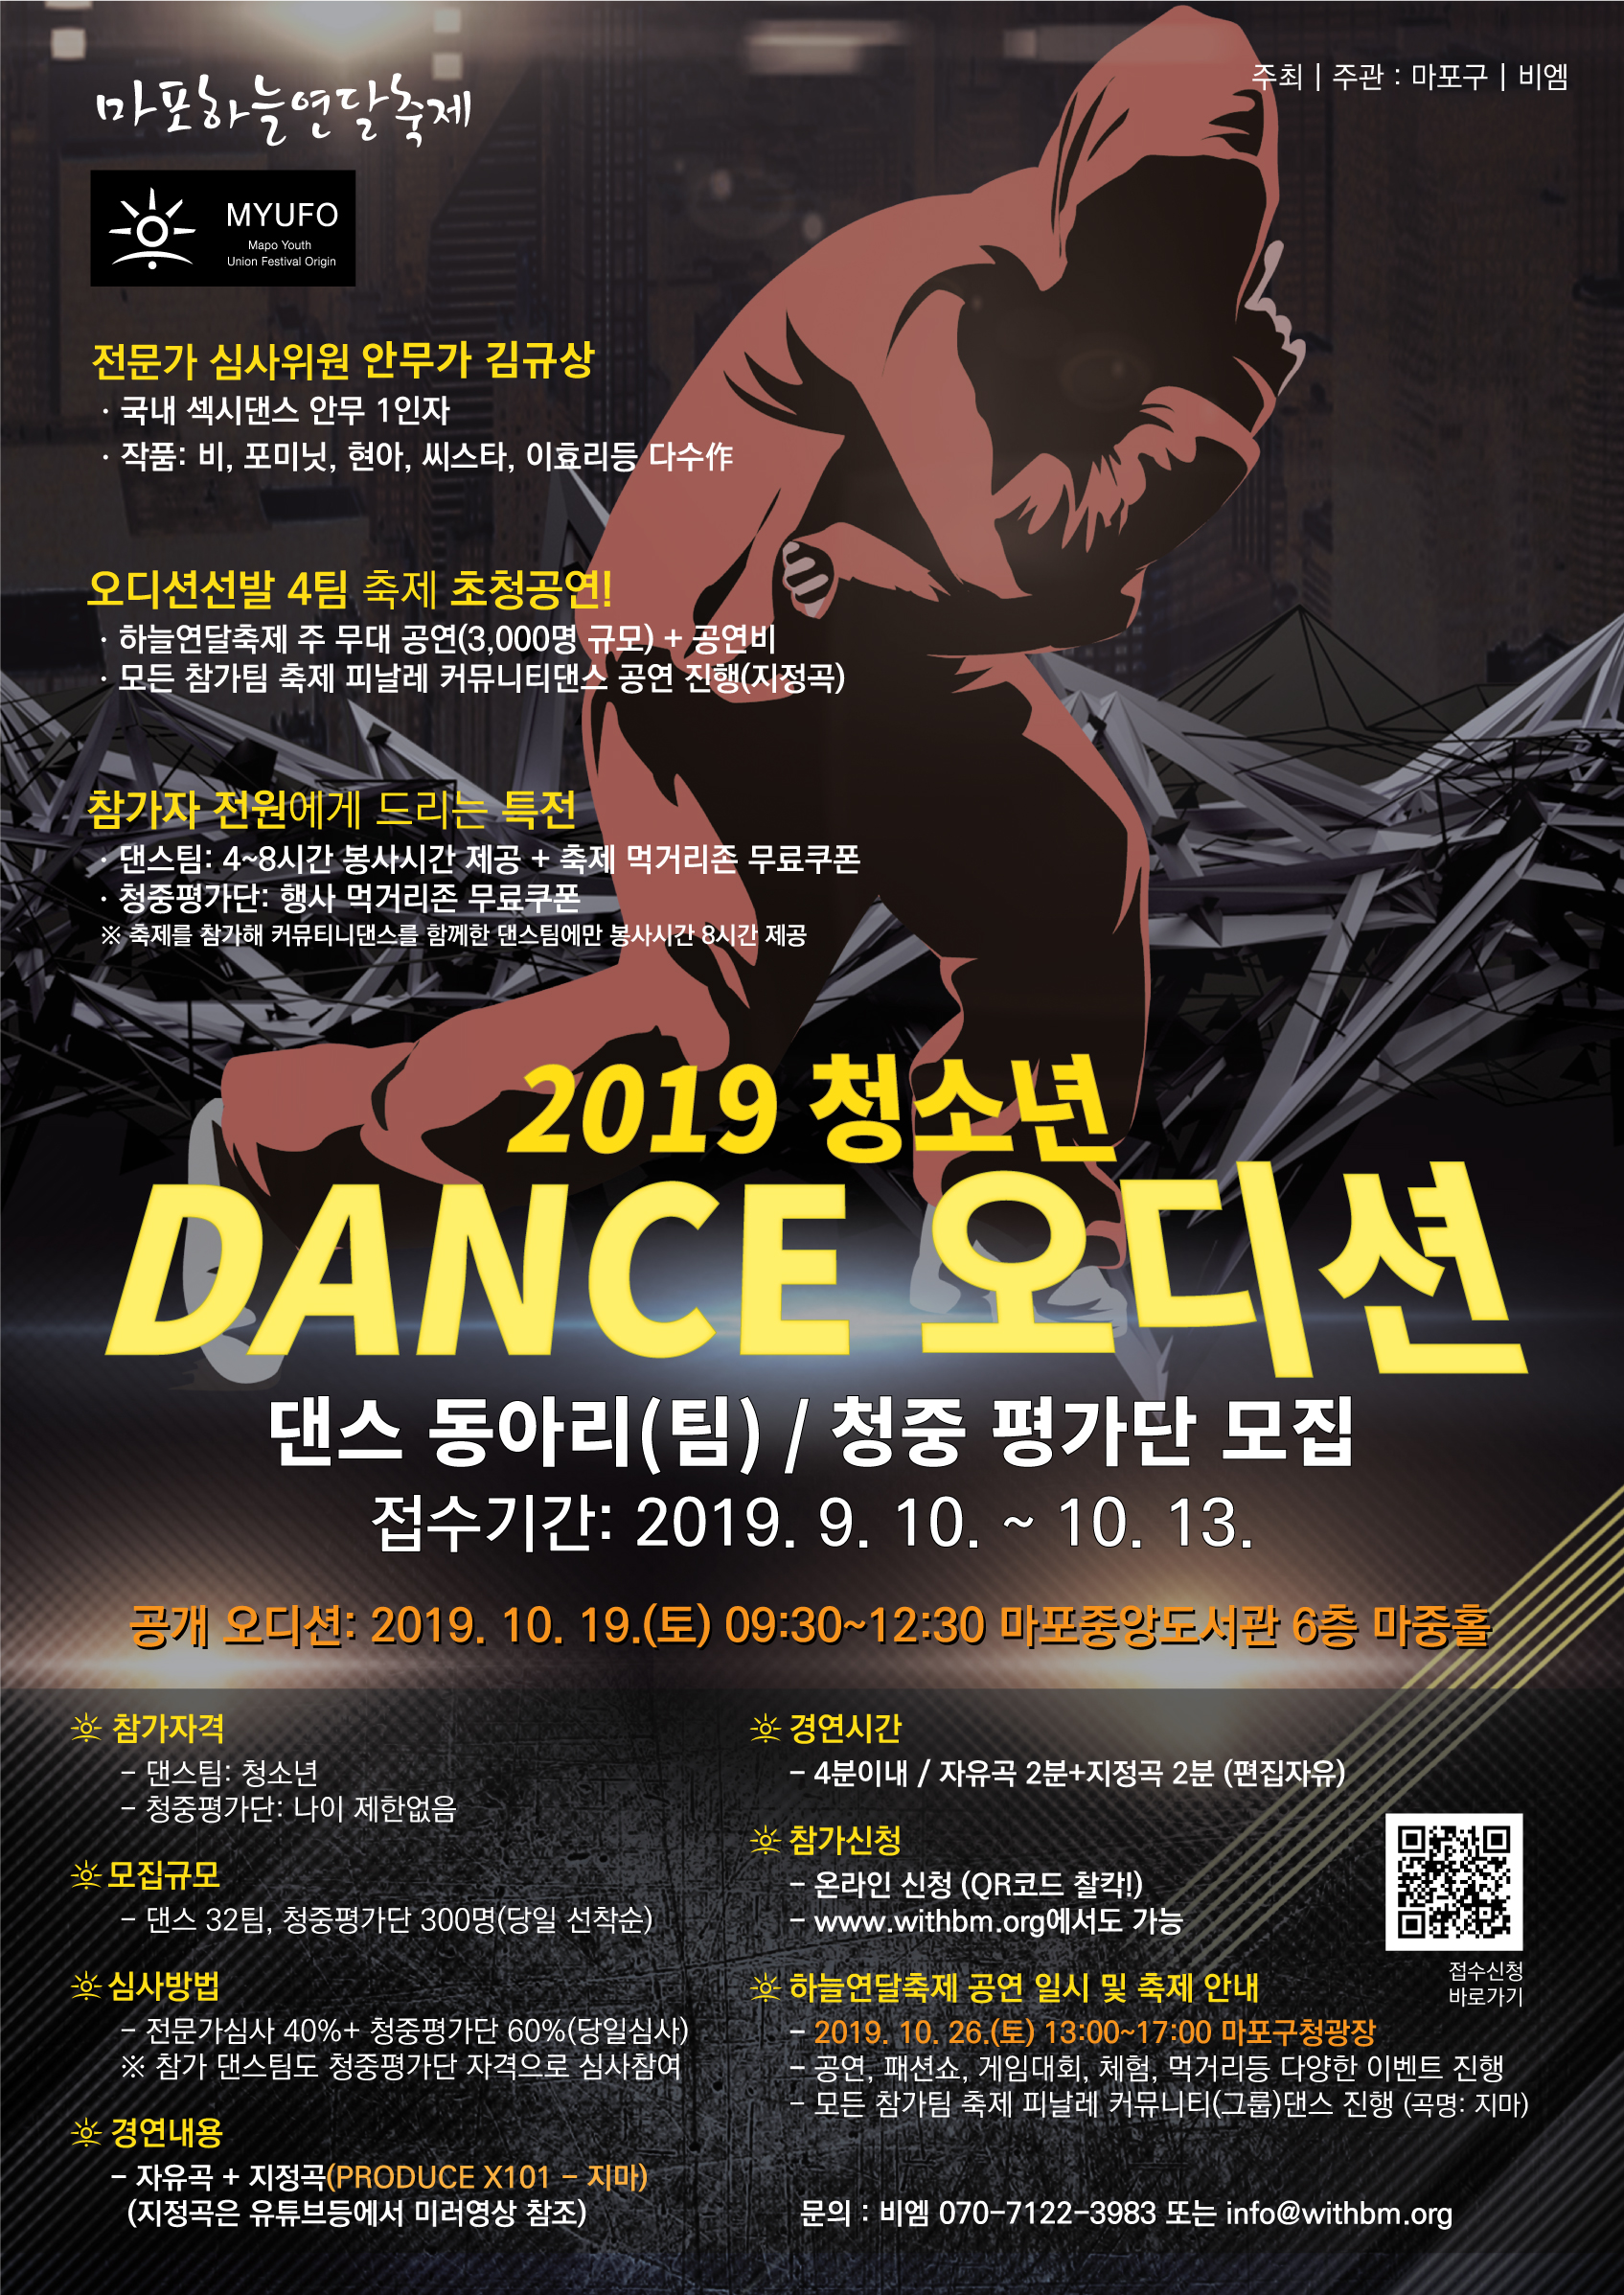 2019 마포하늘연달 축제 댄스오디션 댄스팀, 청중평가단 모집